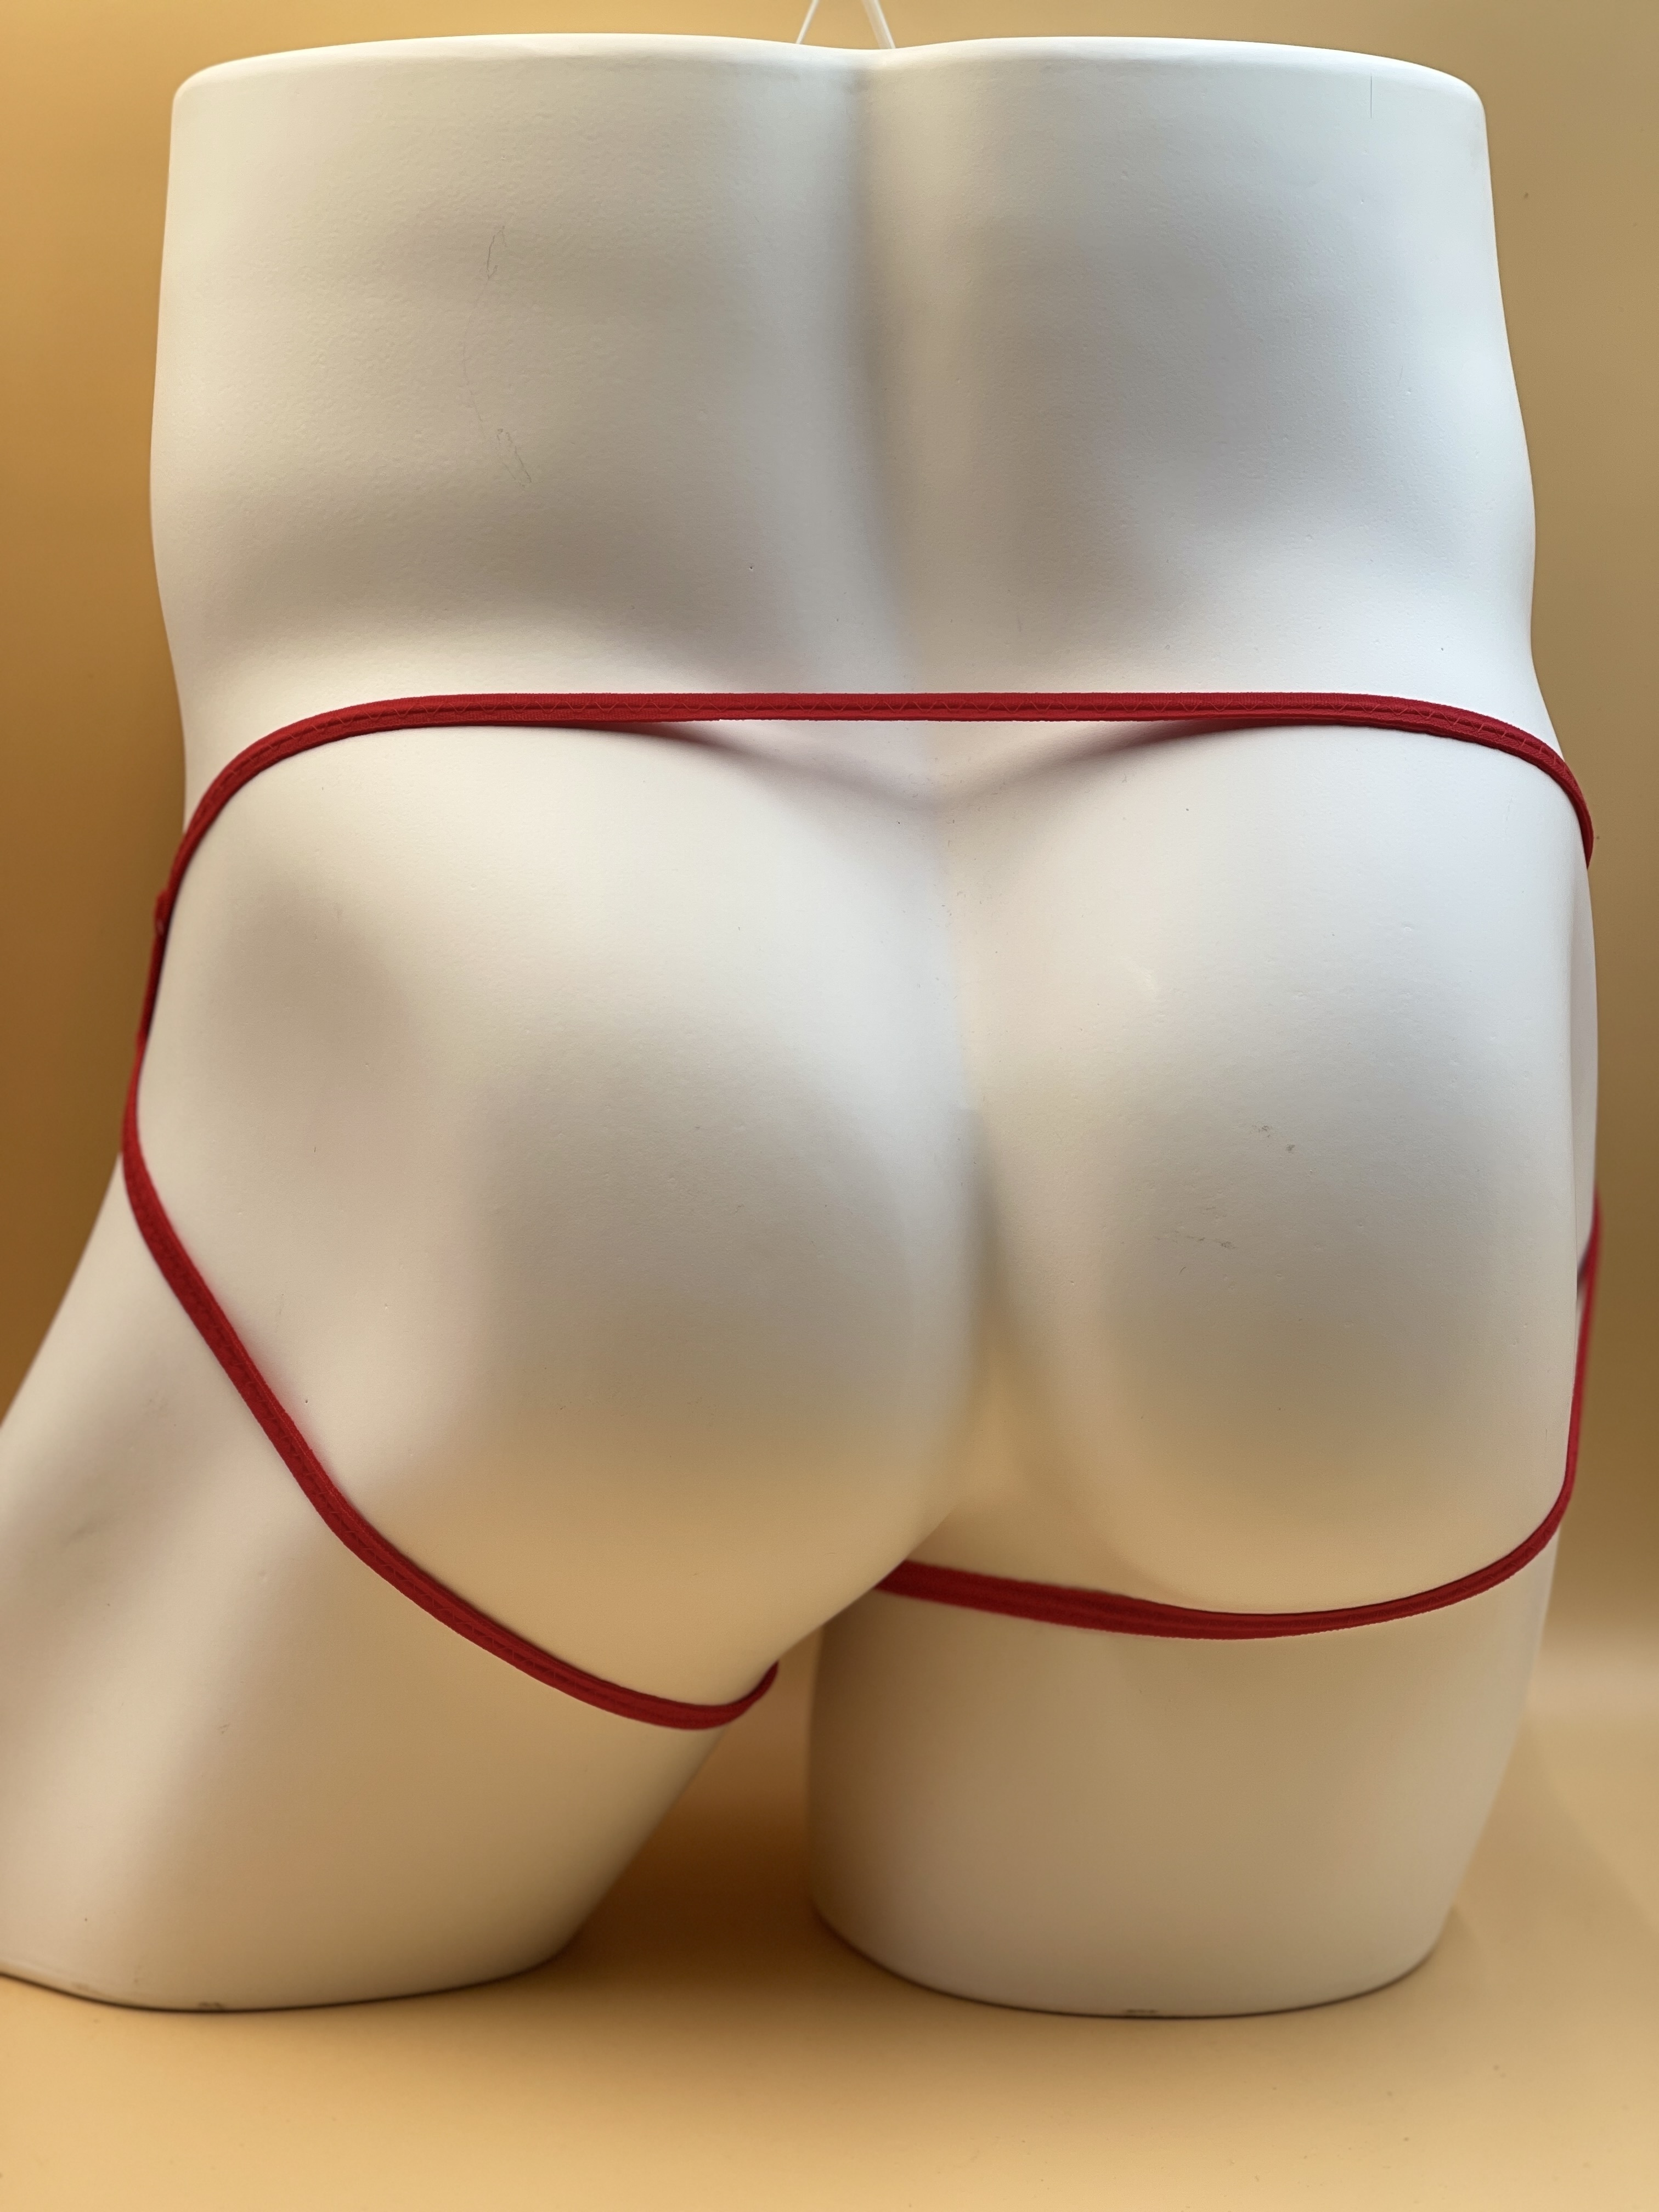 Sexy Panties Thongs, Underpants